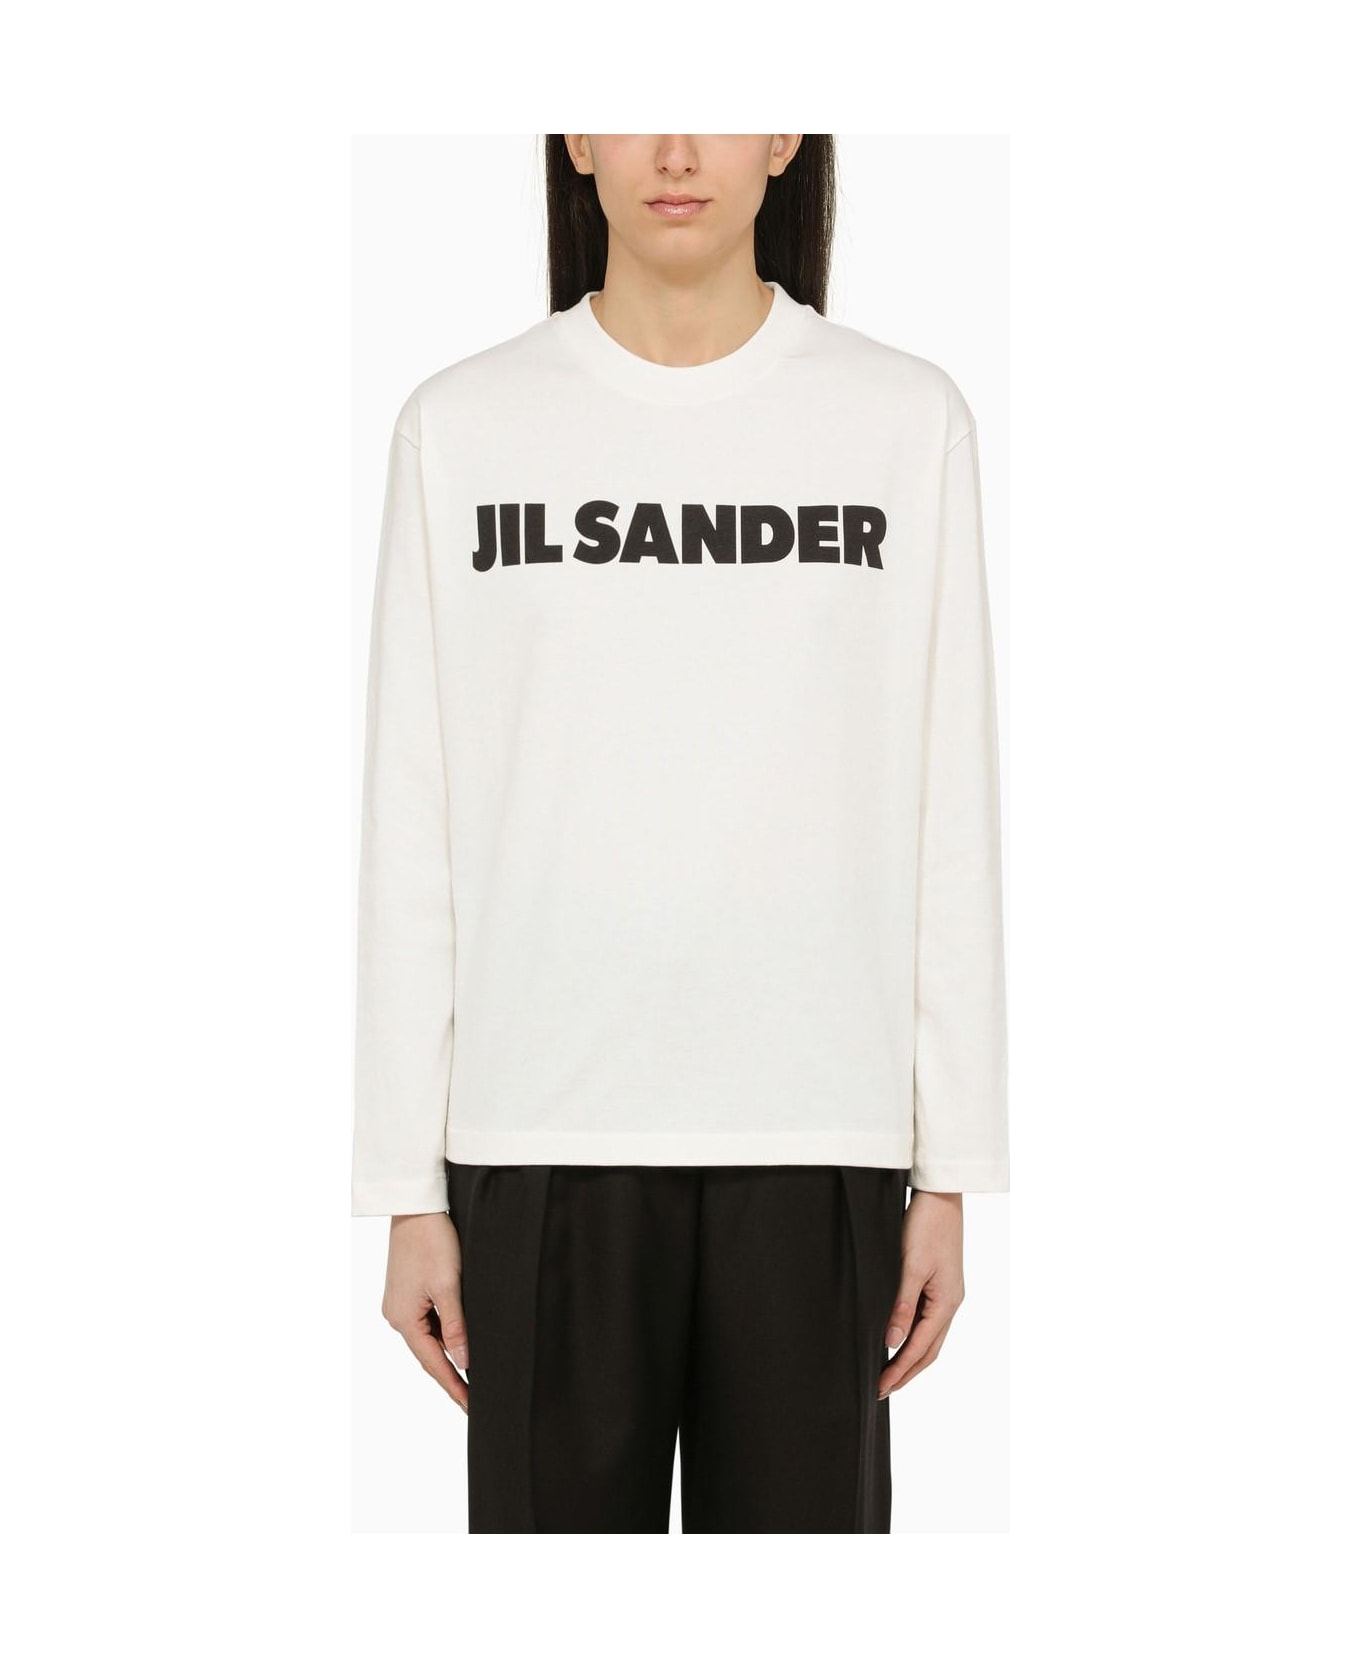 Jil Sander White Long-sleeved T-shirt Tシャツ